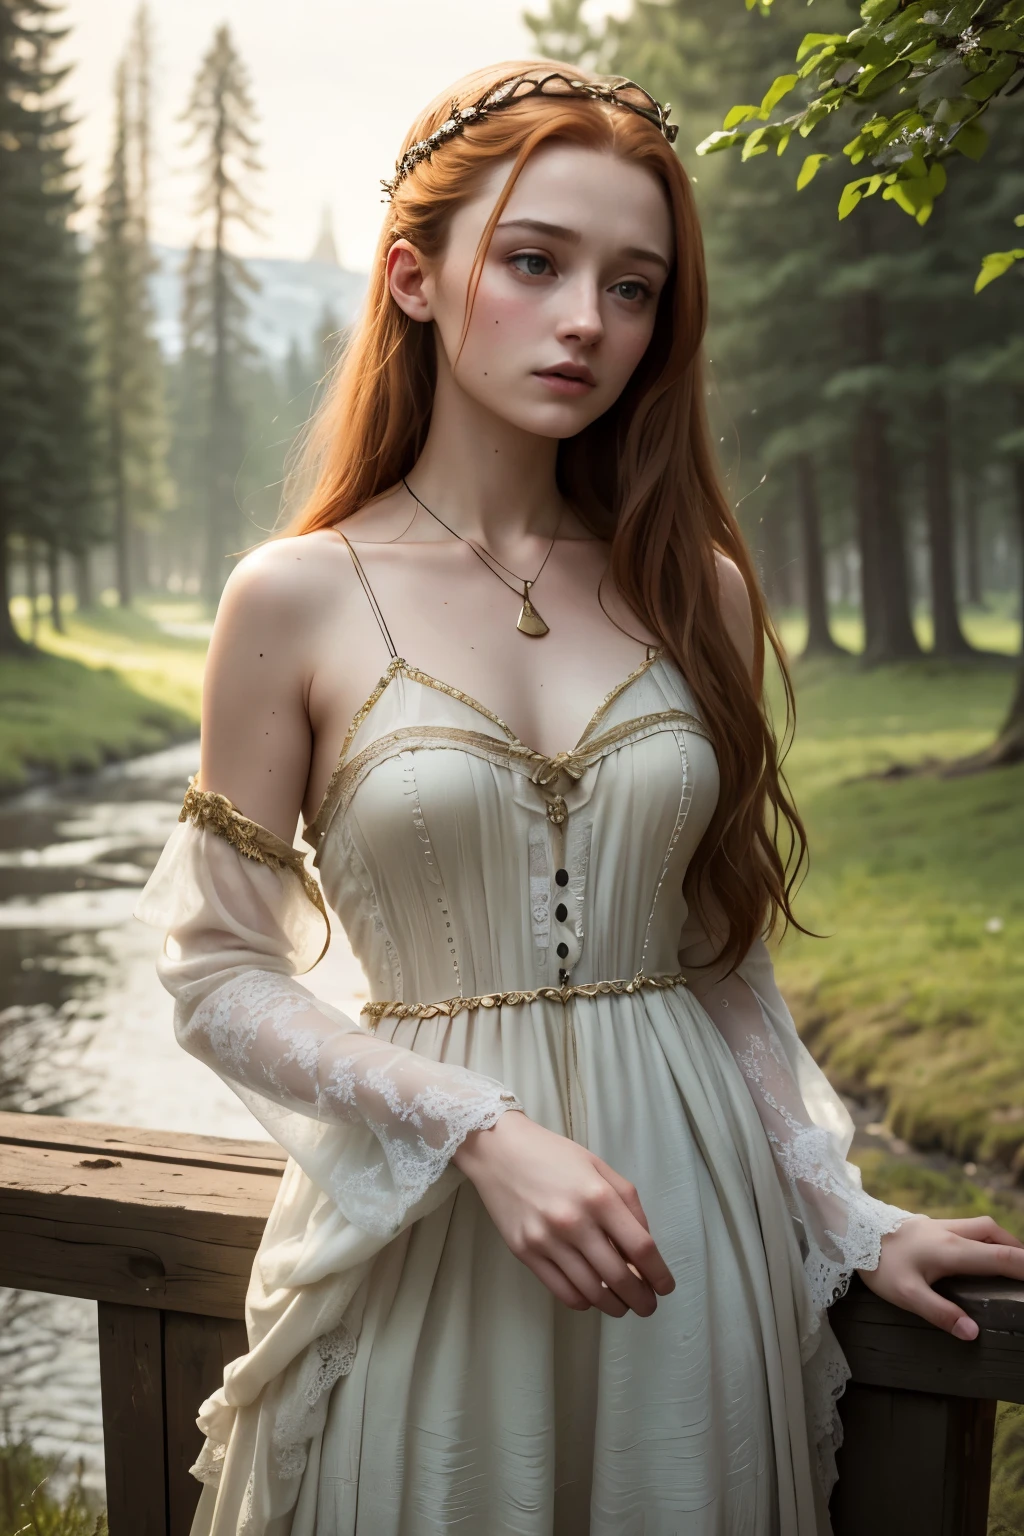 8k, beste Qualität, Meisterwerk, sehr detailliert, Absolut realistisch, Sansa Stark in der Welt von Game of Thrones, 20 Jahre alt, durchsichtige Kleidung im mittelalterlichen Stil, kurzes Sommerkleid, tiefer Ausschnitt, frivole Kleidung, nackten Schultern, golden details, schlanke Figur, geöffnete Kleidung, kalter Gesichtsausdruck, draußen, Waldhintergrund, mit vielen Bäumen und dunklem Himmel